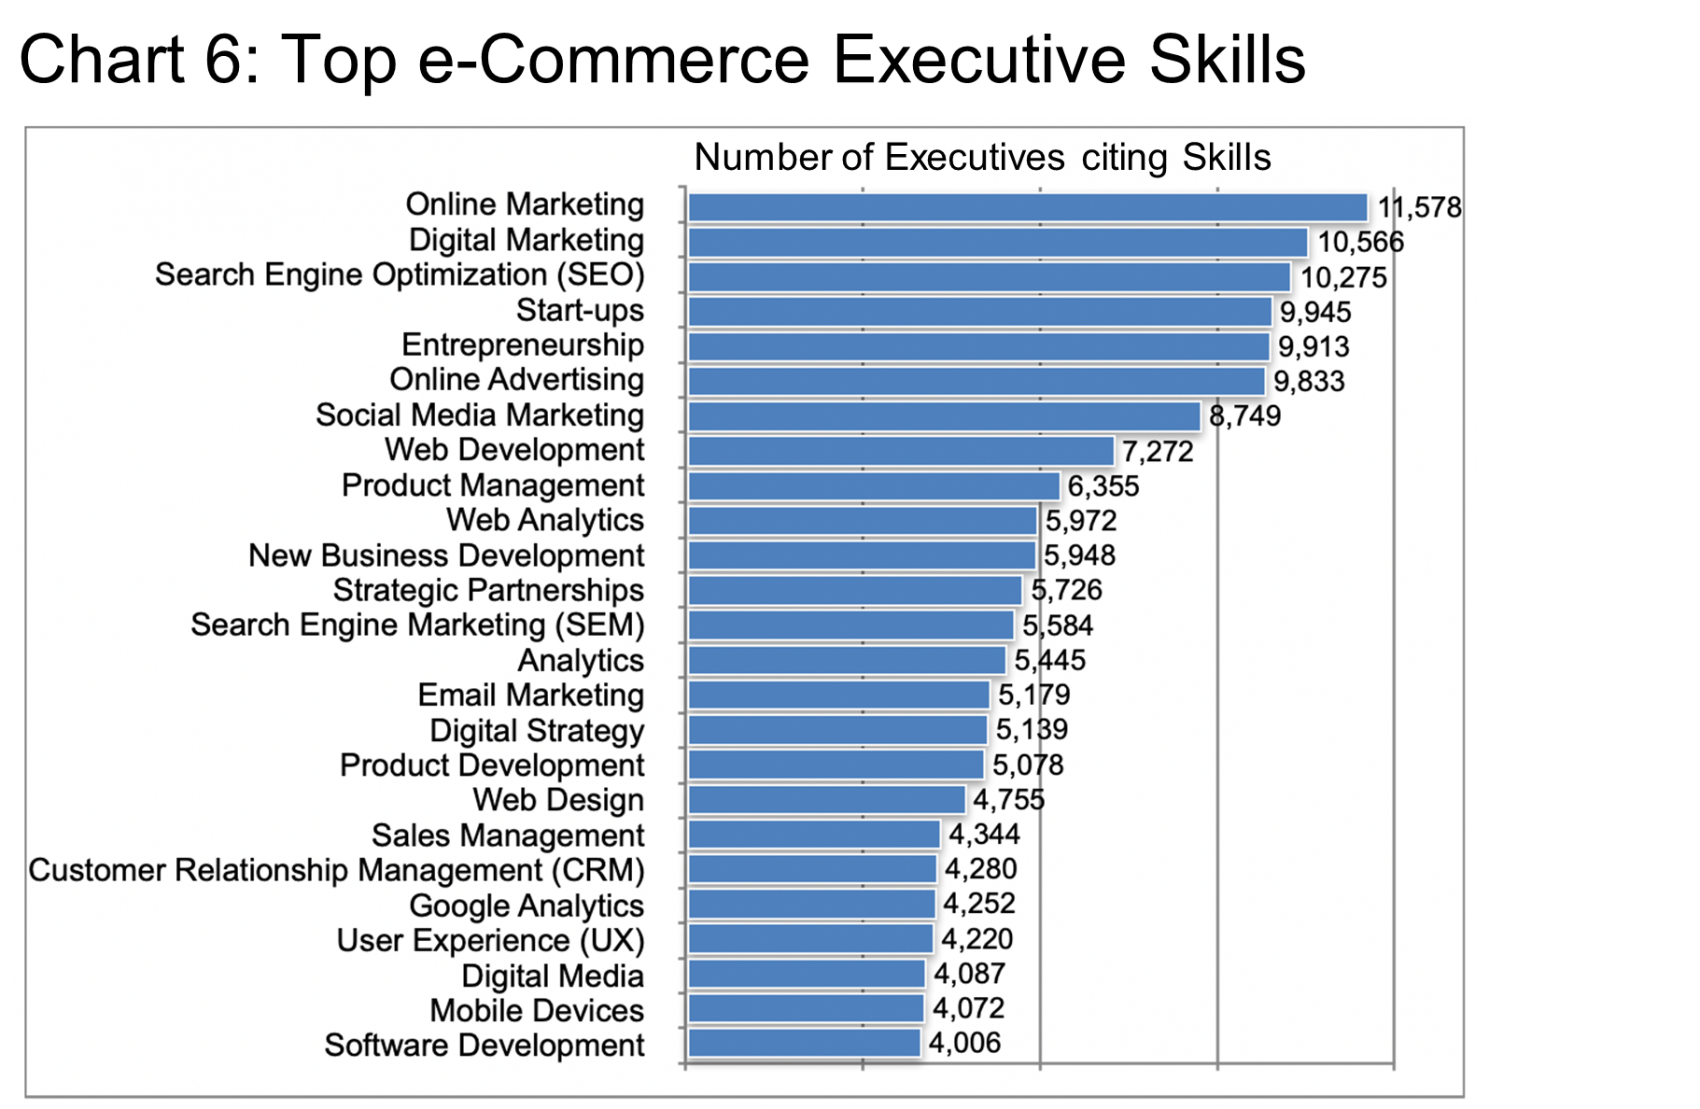 Top e-Commerce Executive Skills Chart 6